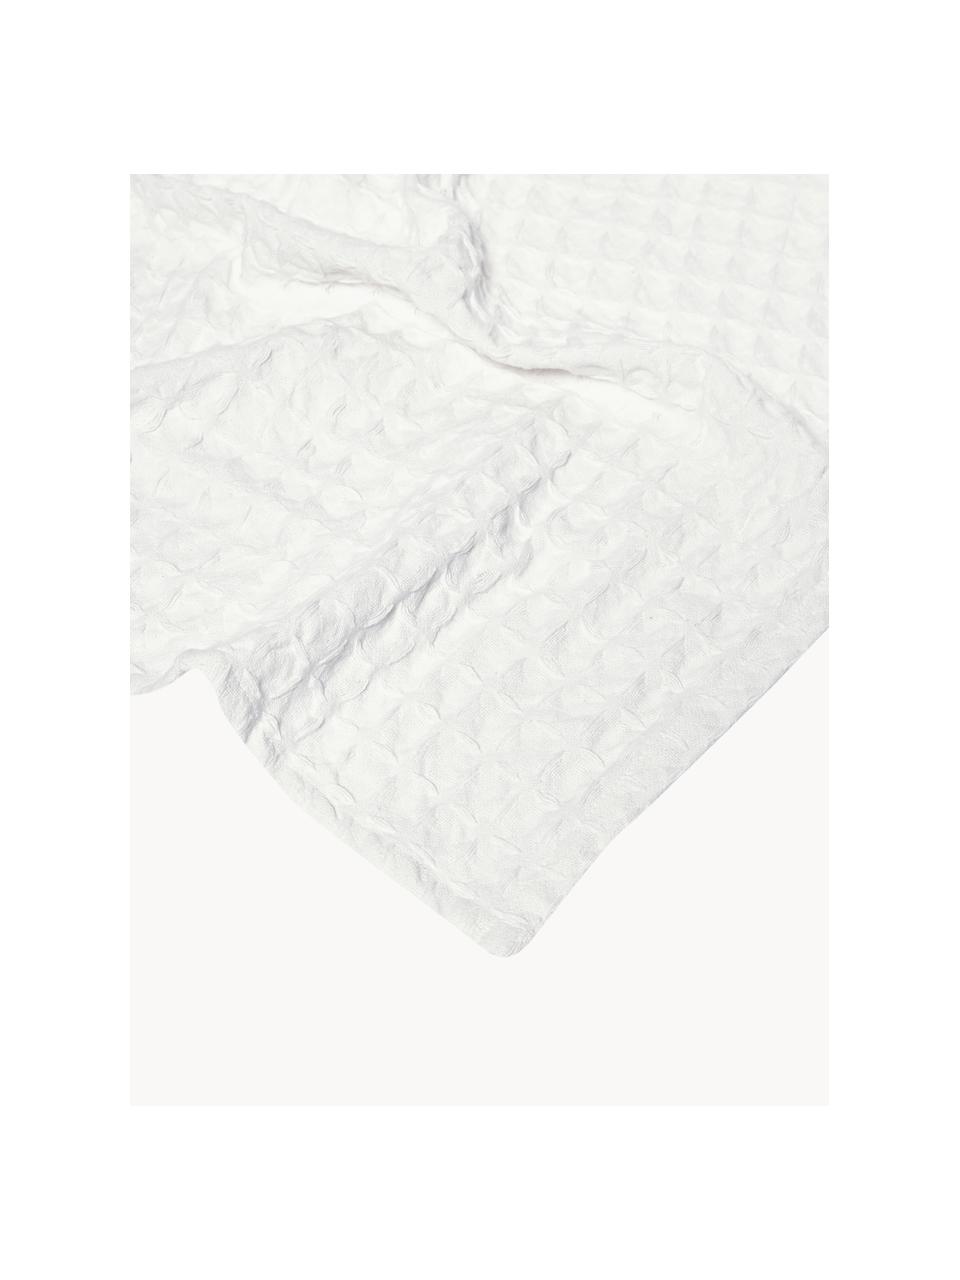 Waffelpiqué-Tagesdecke Panal, 100% Baumwolle, Weiss, B 180 x L 260 cm (für Betten bis 140 x 200 cm)